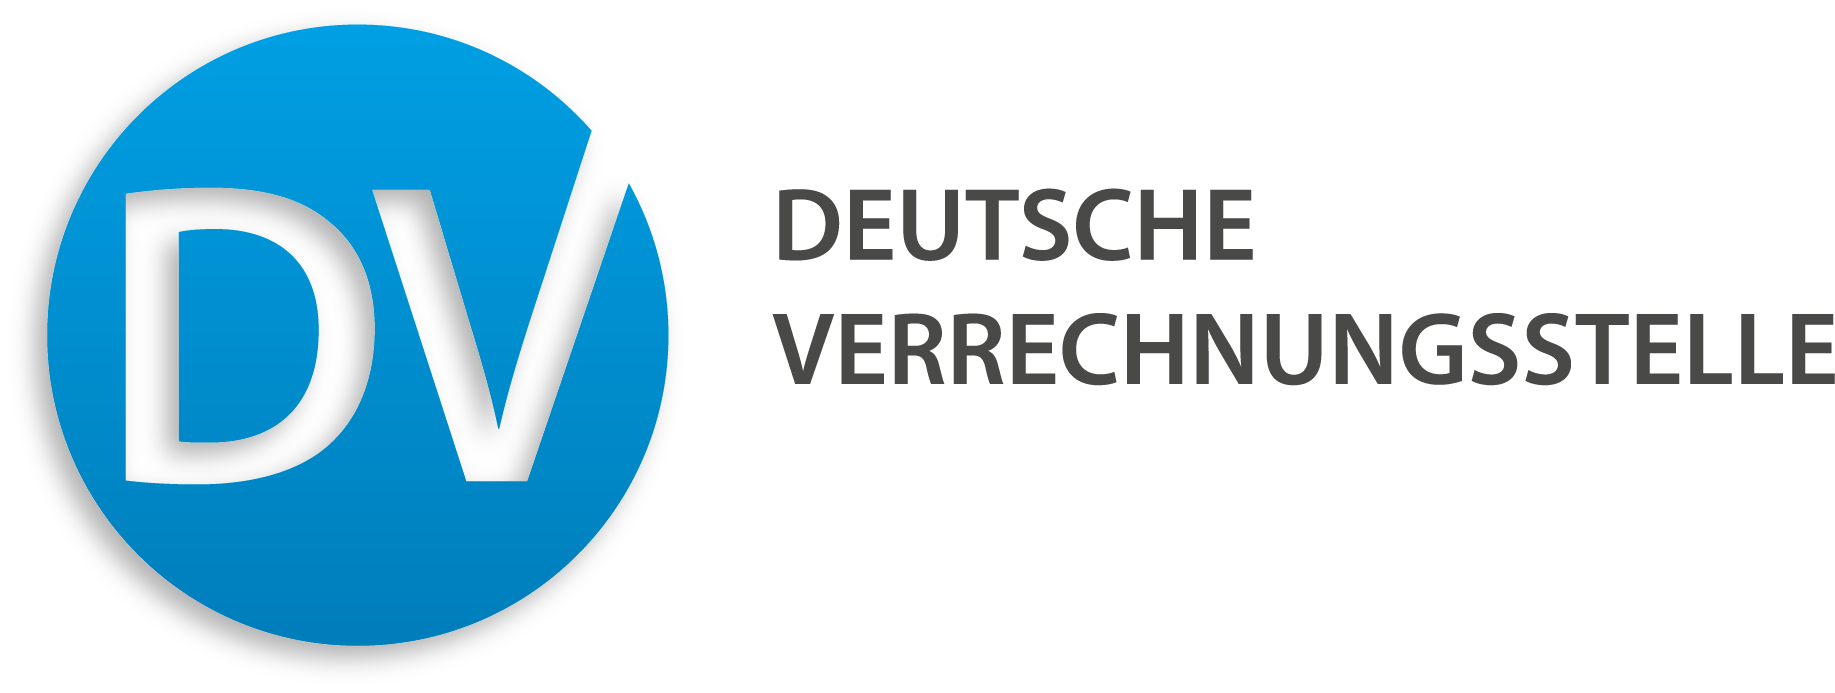 Deutsche Verrechnungsstelle Logo